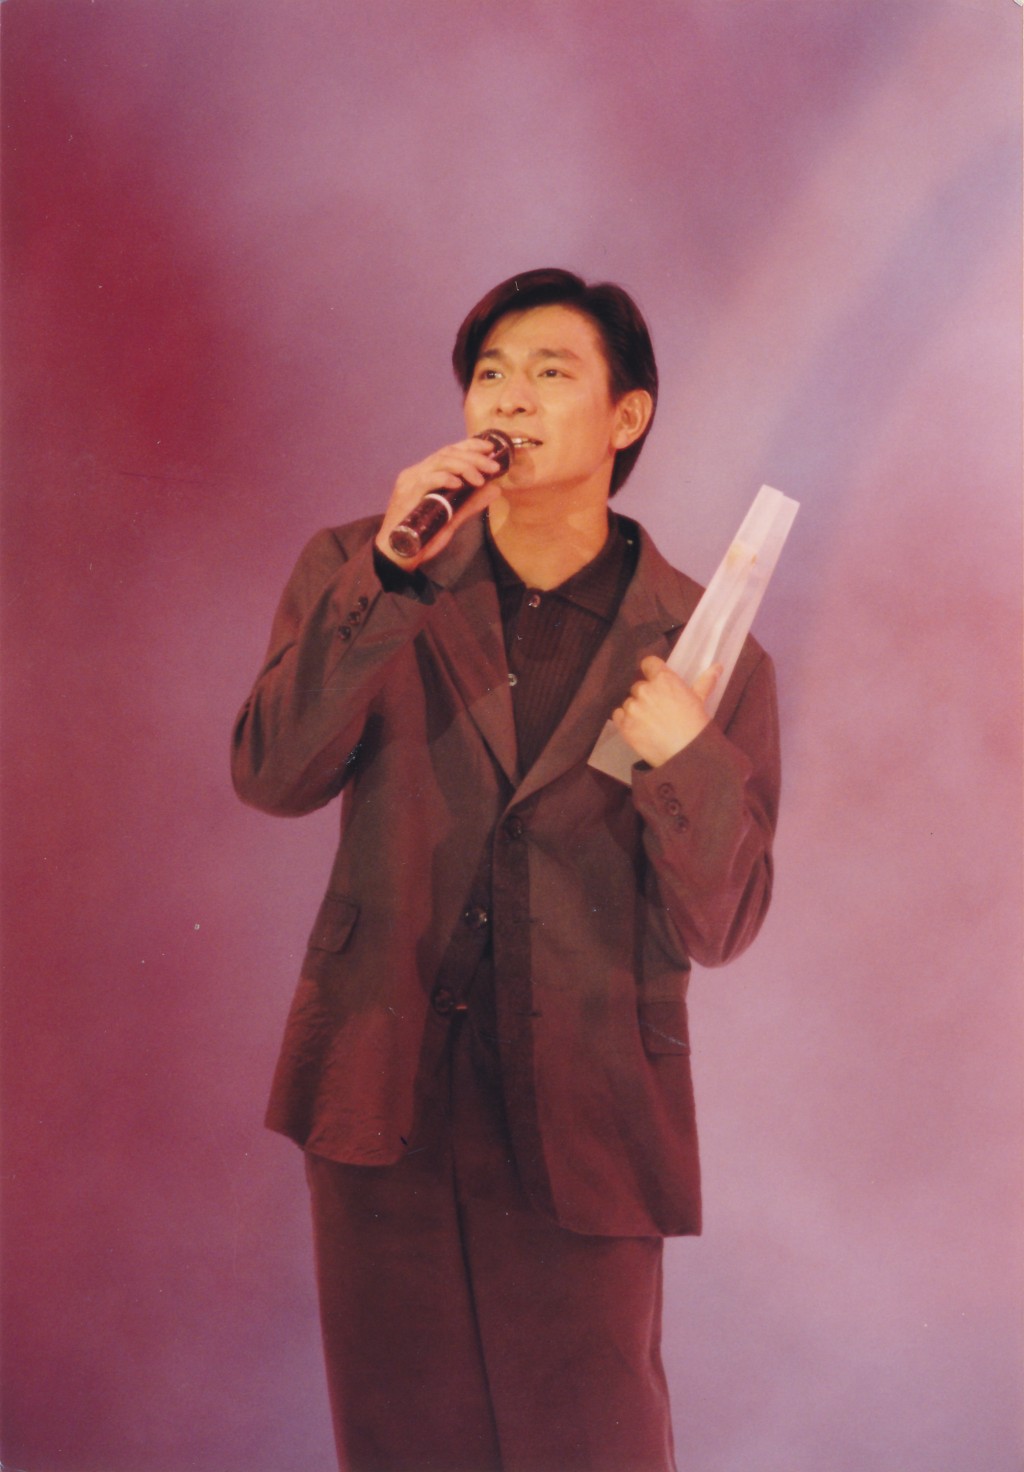 刘德华获奖无数，更是健力士世界纪录大全中，得奖最多的香港歌手。